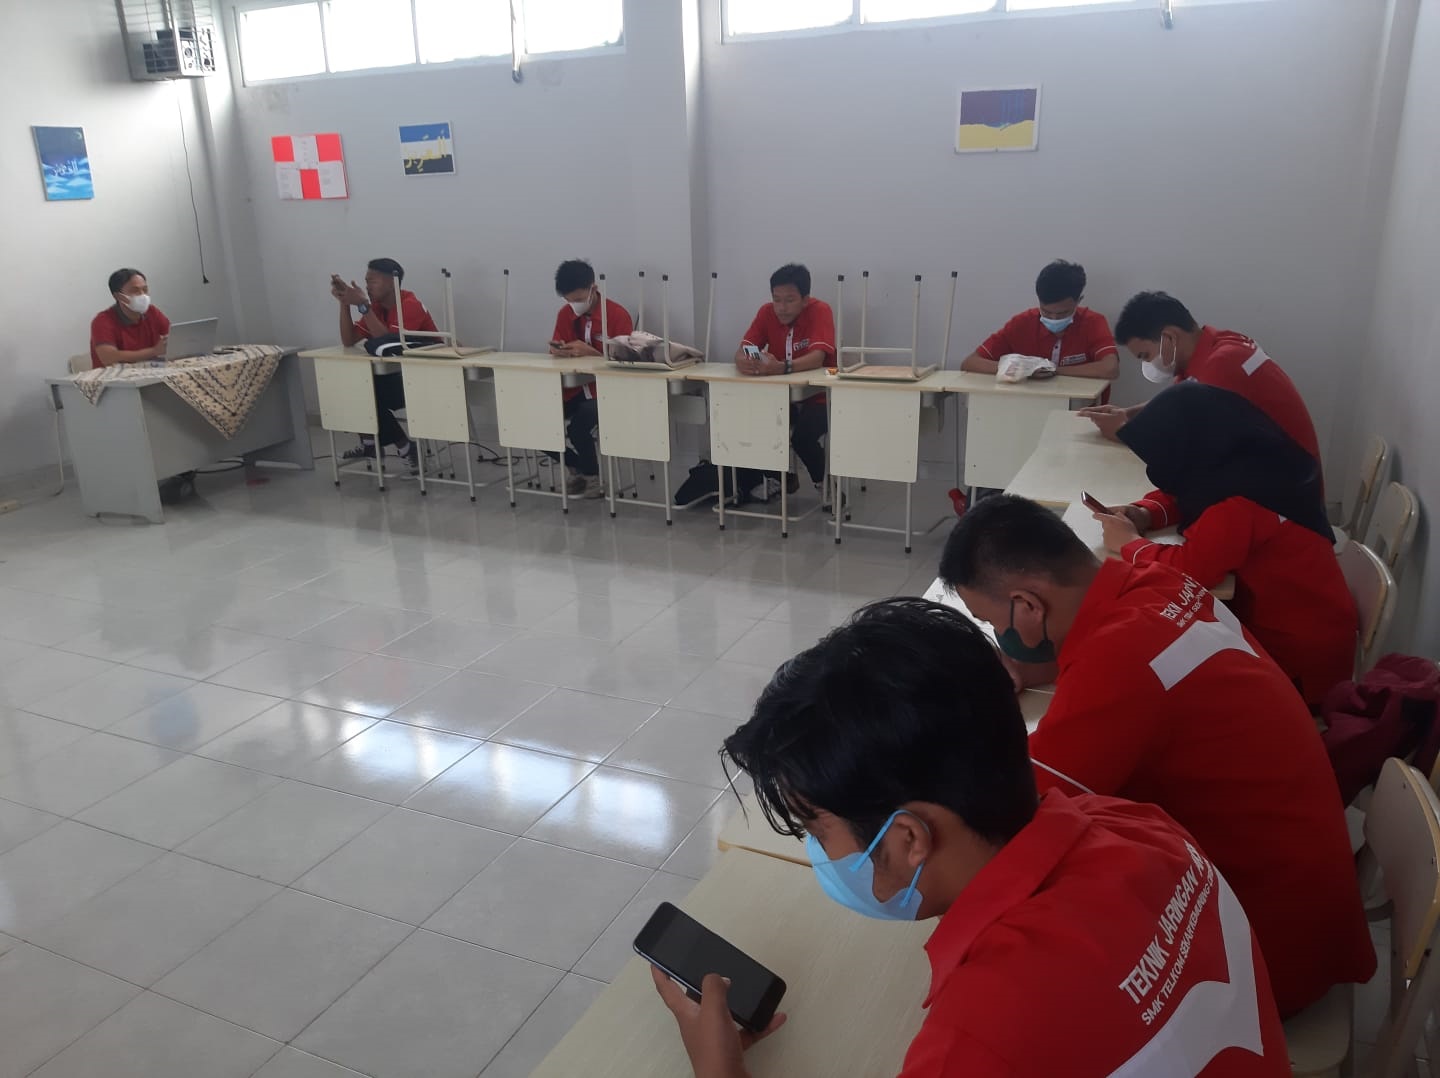 SMK Telkom Cirebon Bekali Siswa Portofolio Digital